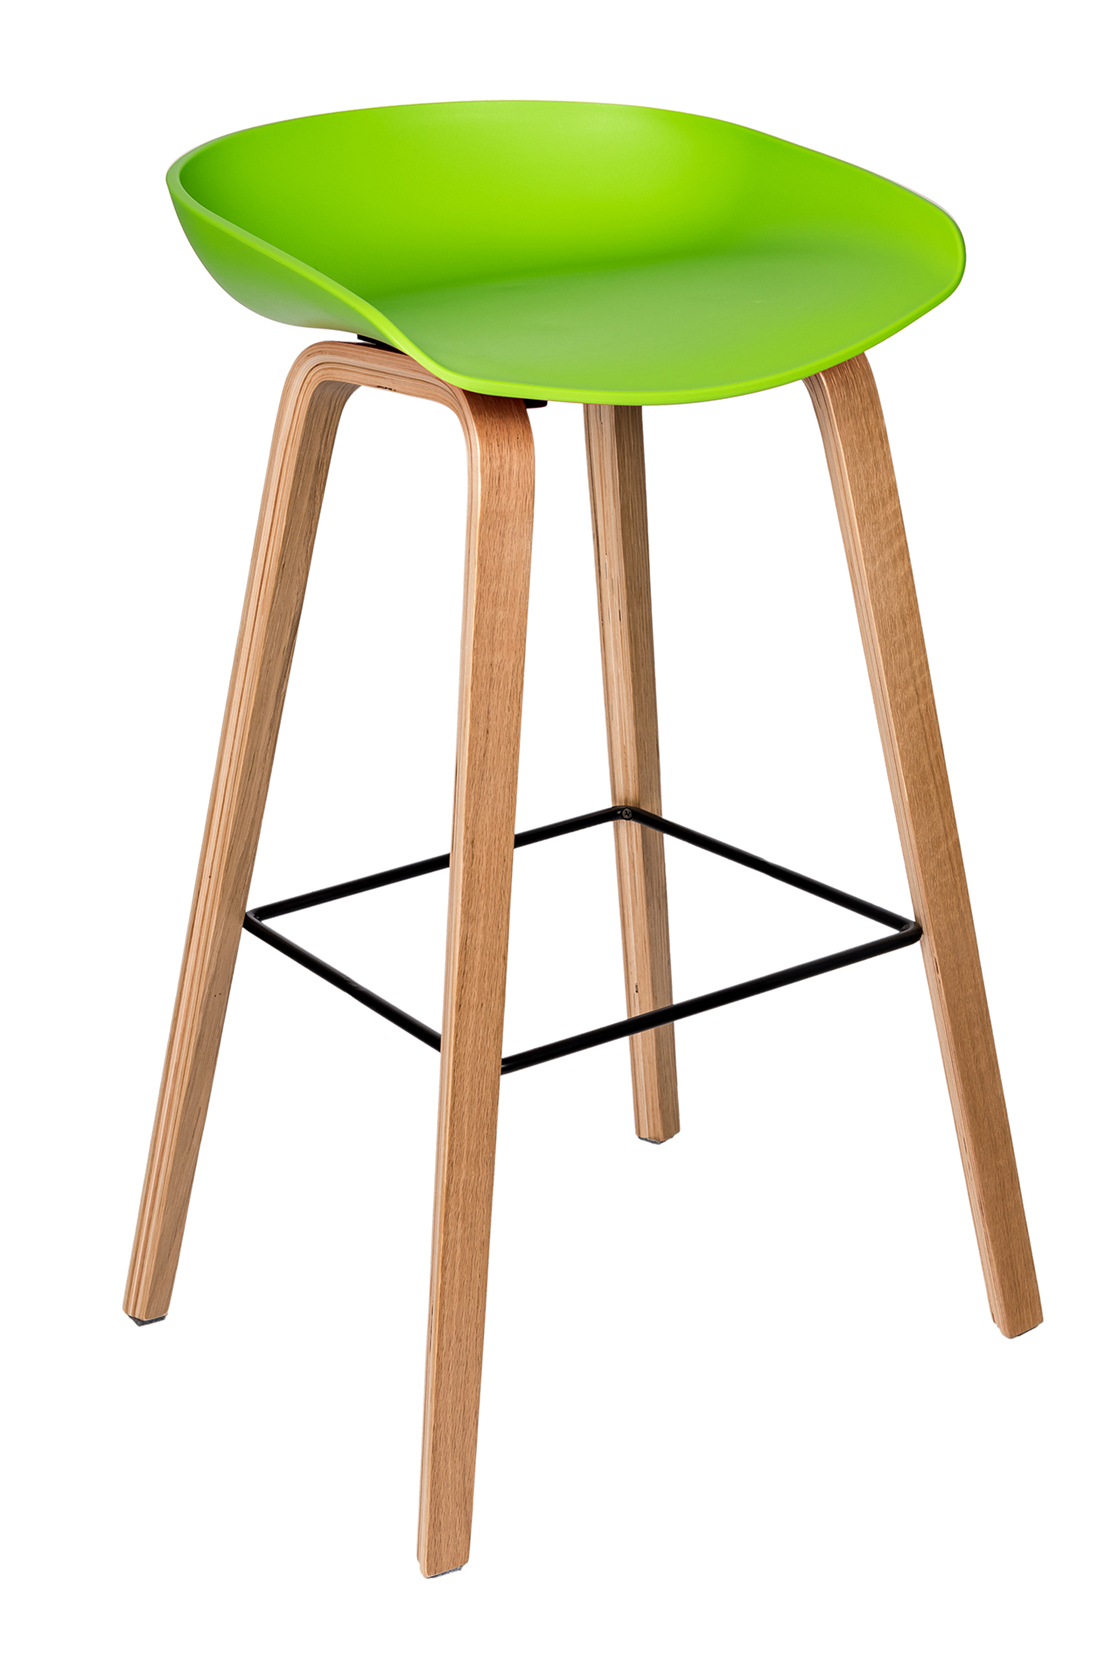 Пластиковый барный стул Либра Зеленый  Биробиджан